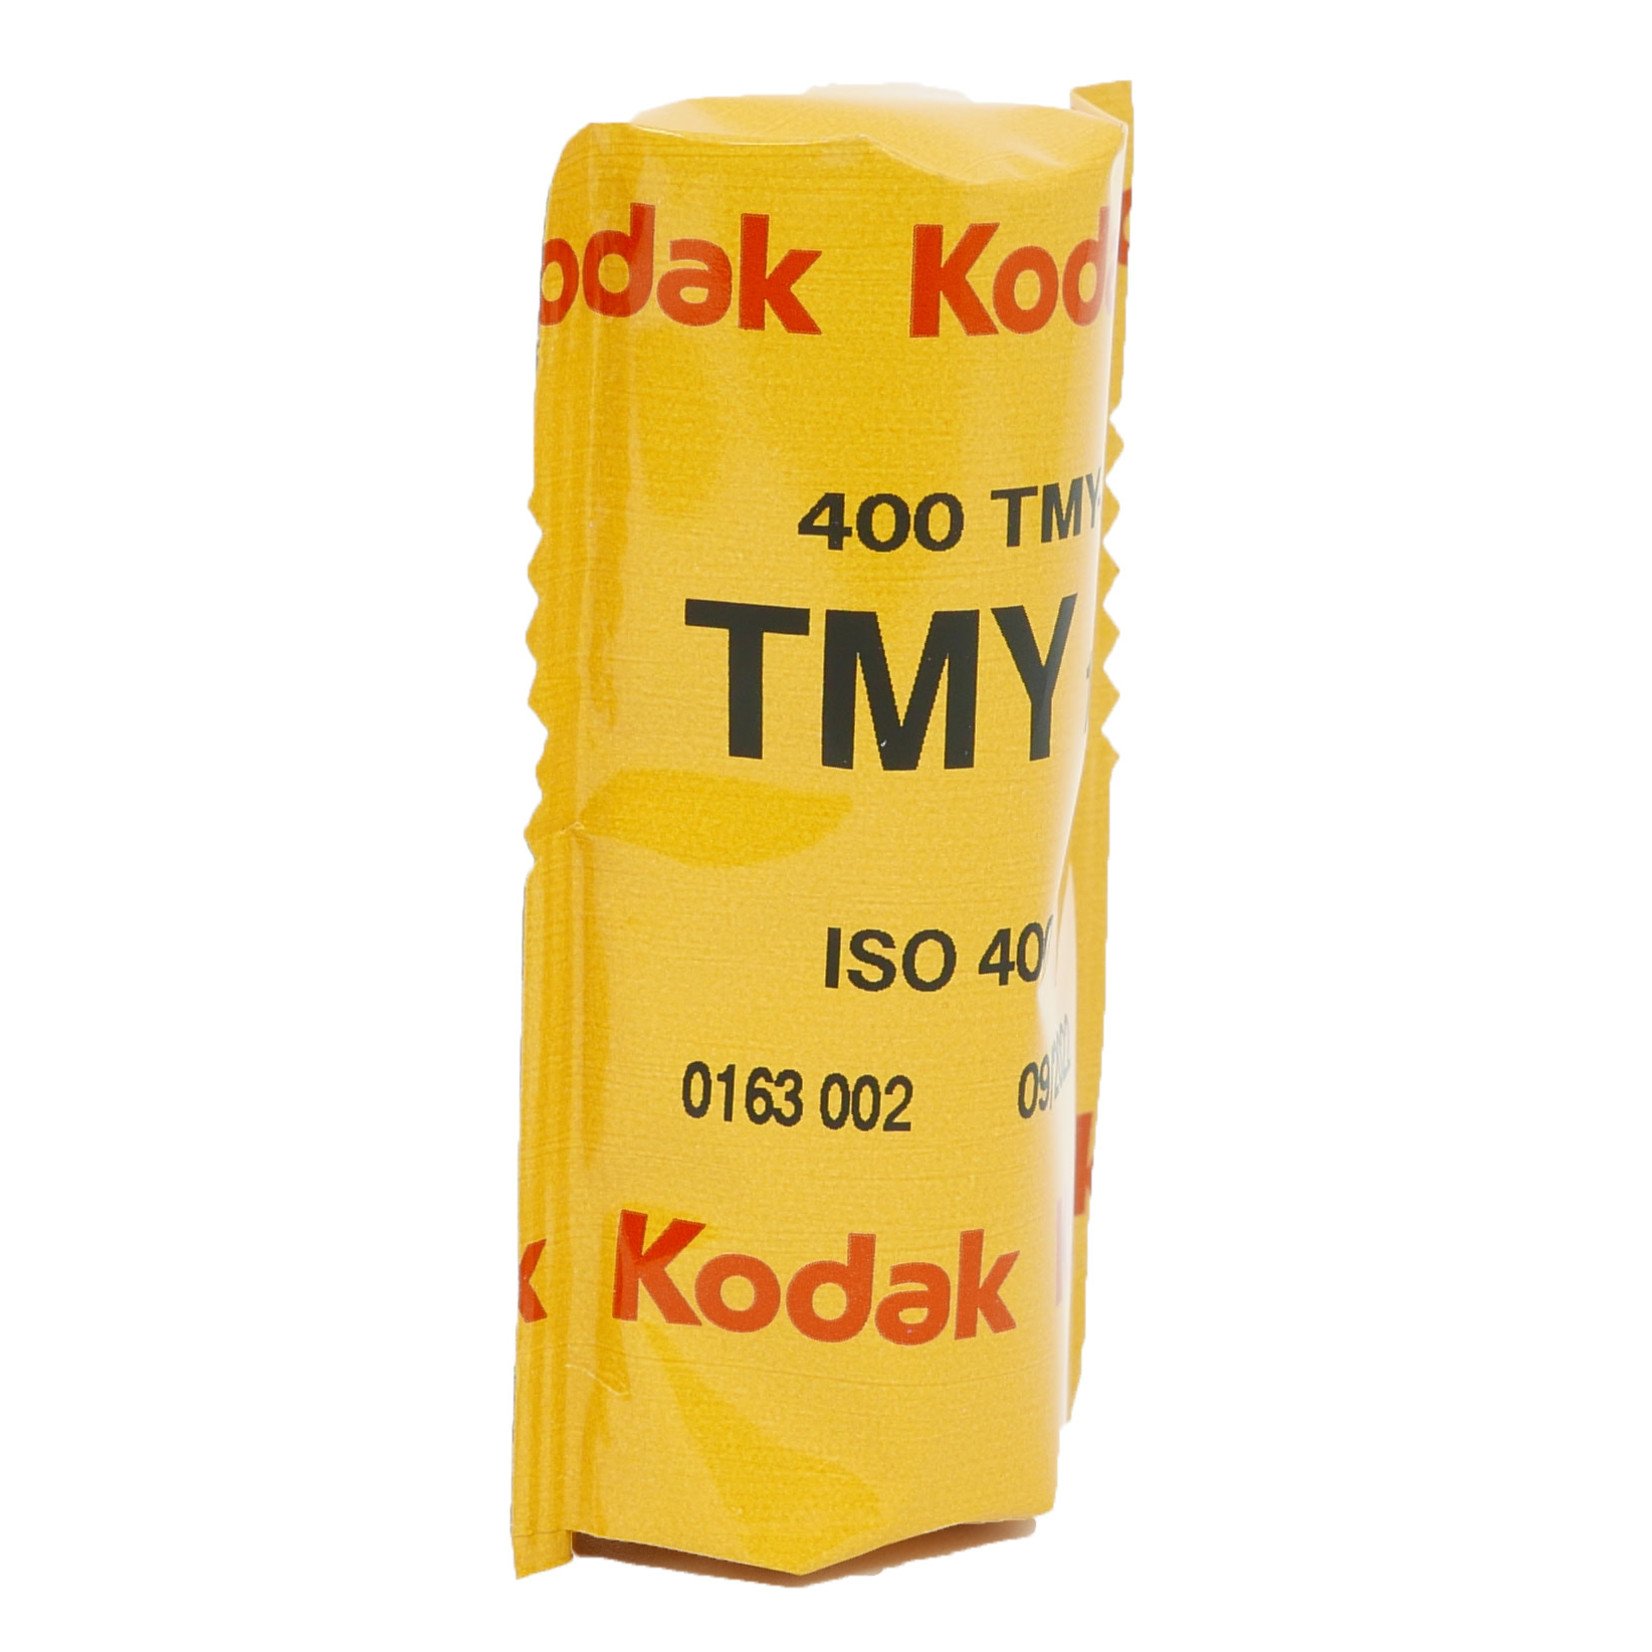 Kodak Kodak 400 T-Max 120mm